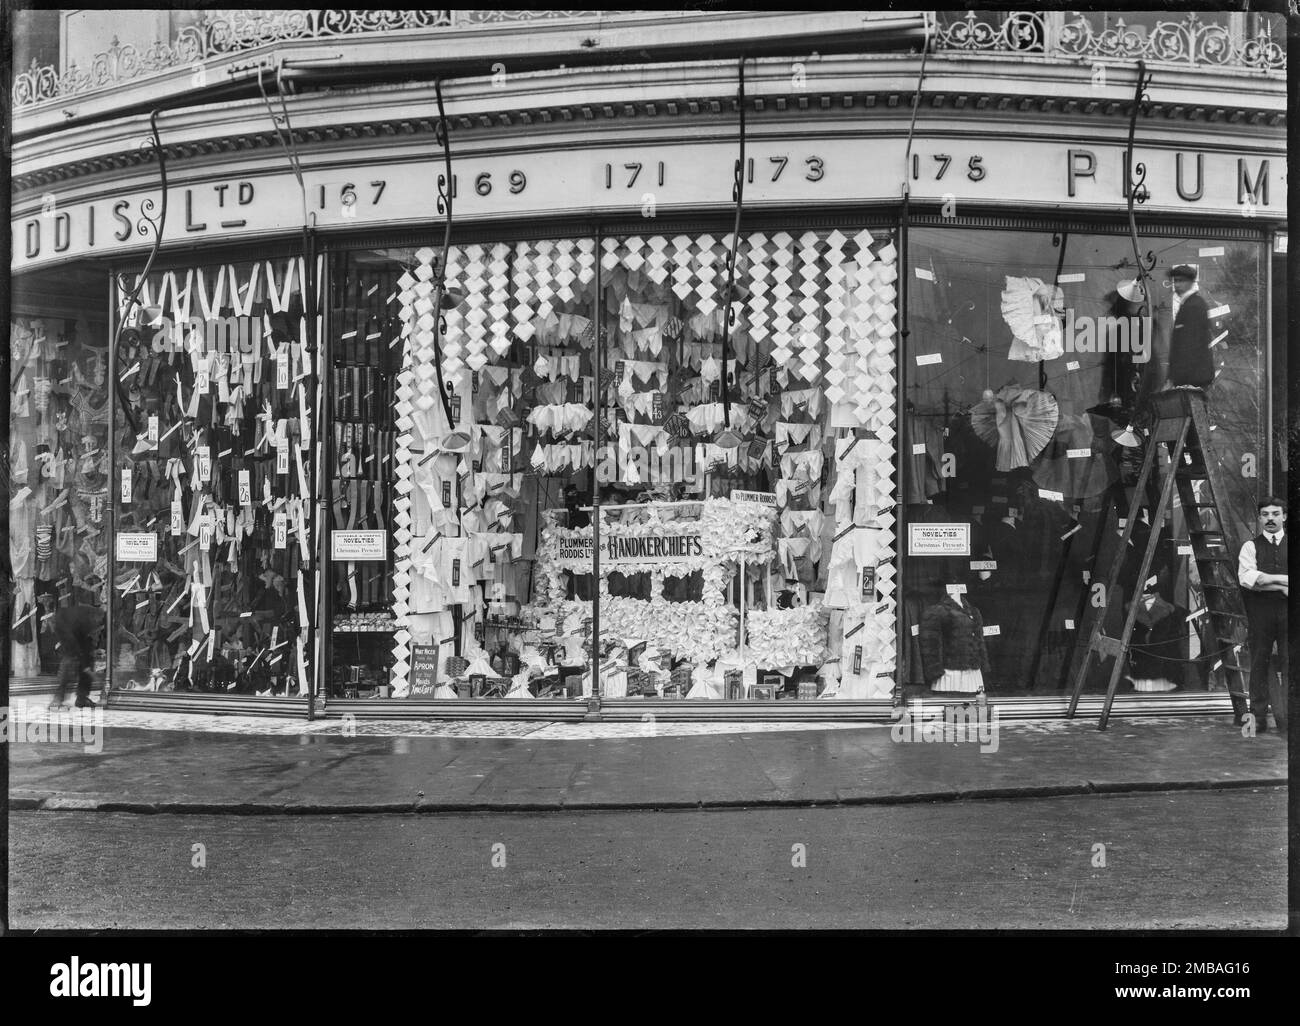 Plummer and Roddis Ltd grand magasin, 167-175 au-dessus de Bar Street, Southampton, 1909. Vue extérieure montrant l'avant de l'atelier et la vitrine du grand magasin Plummer et Roddis, avec deux hommes debout près de la fenêtre de l'atelier. La fenêtre est dotée d'un affichage de mouchoirs, y compris un tram fait de mouchoirs. Banque D'Images